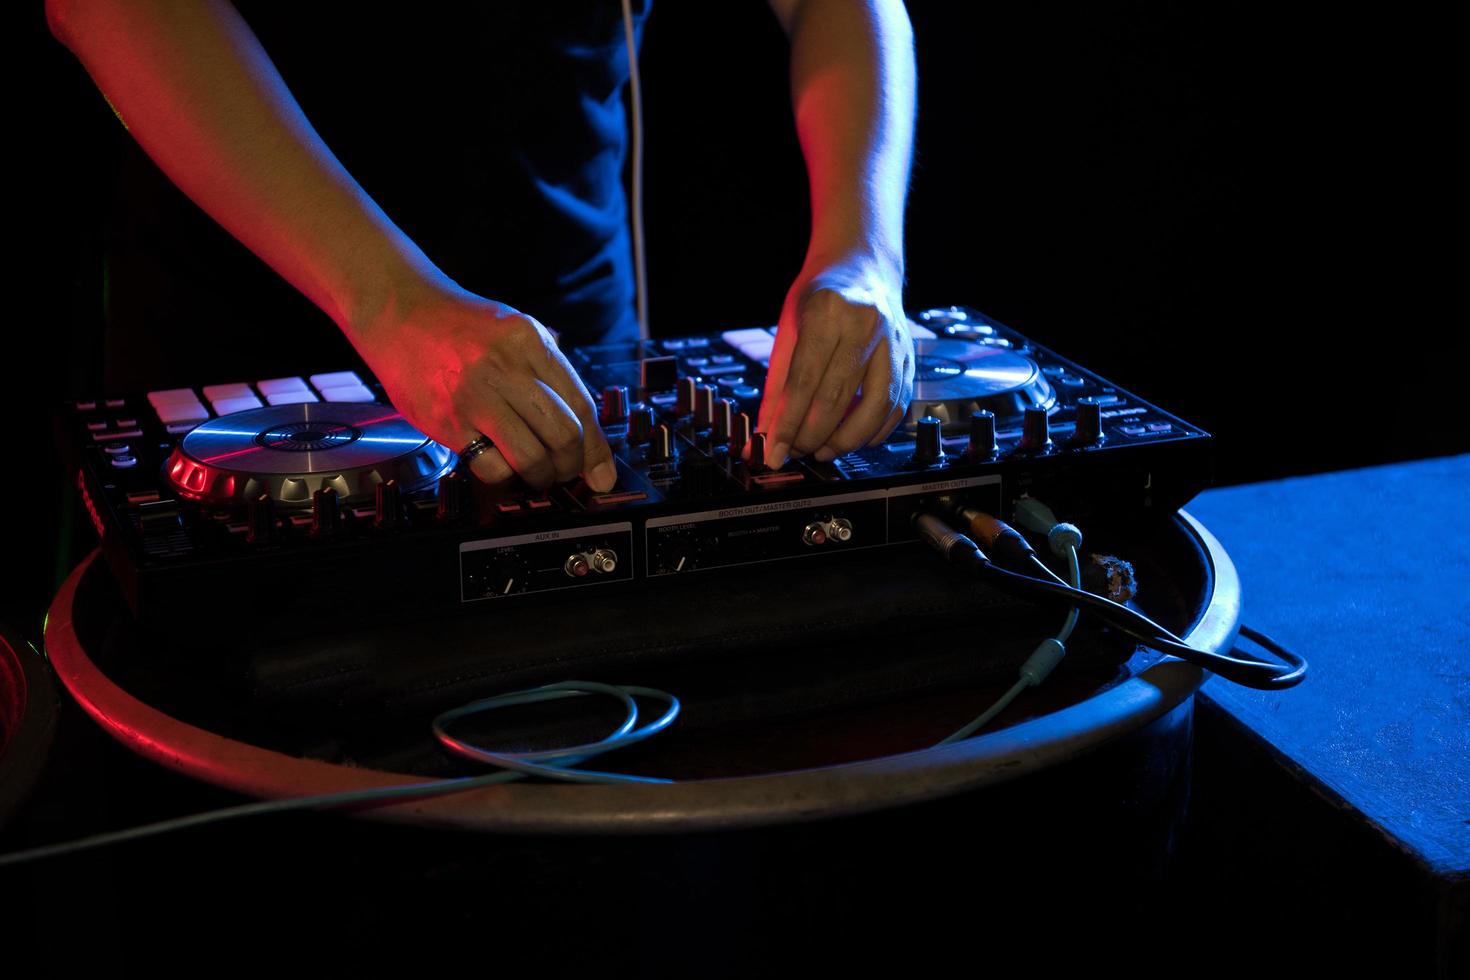 DJ jouant de la musique de platine à la soirée dans un club photo